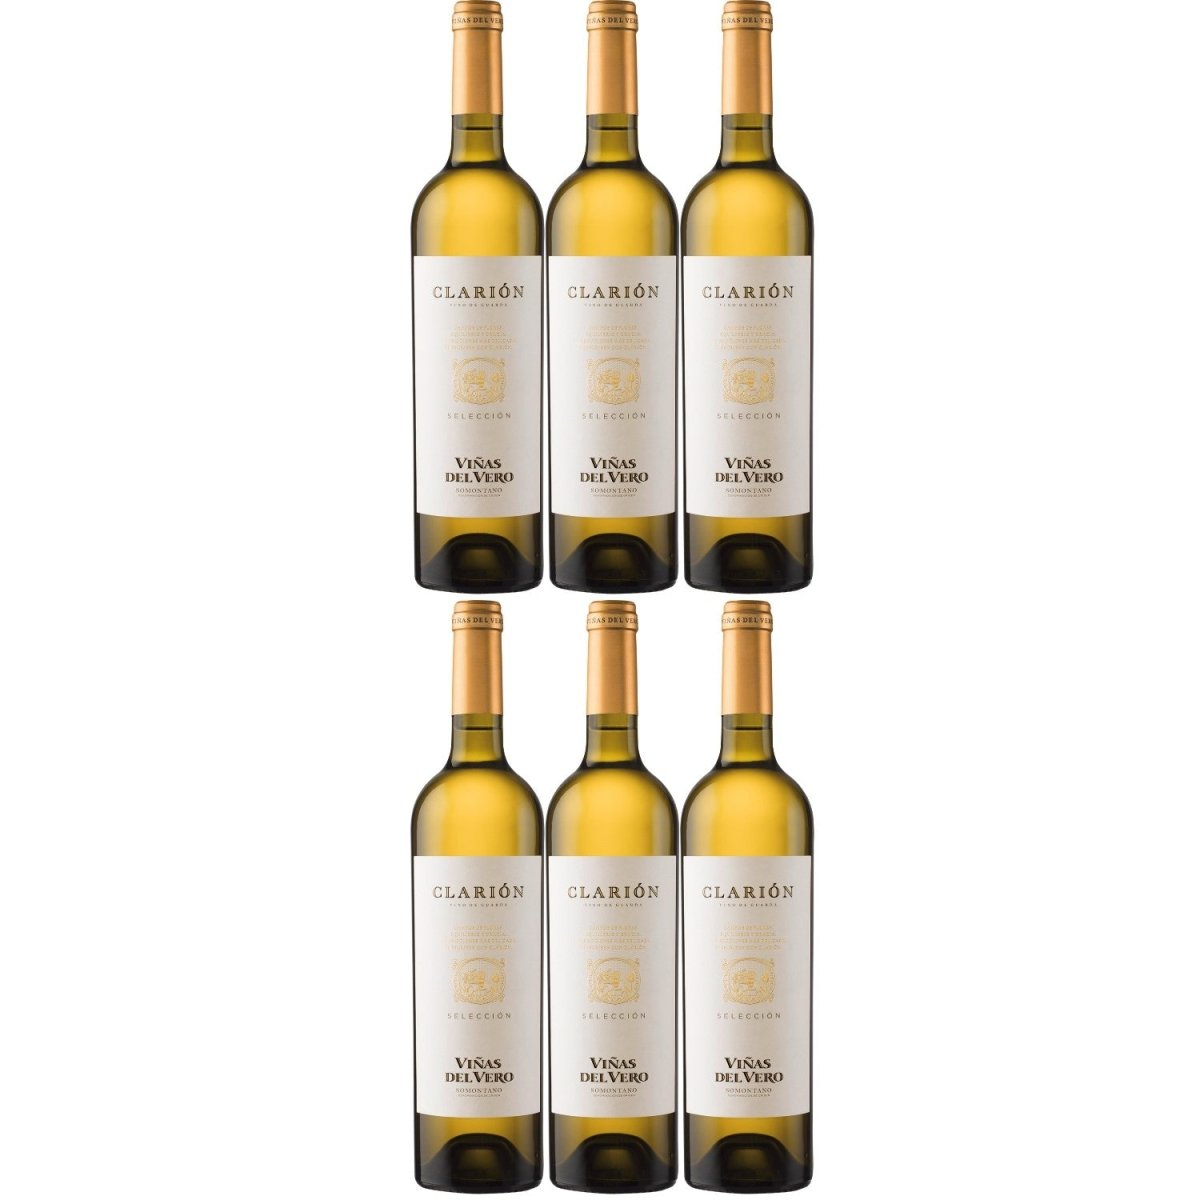 Viñas del Vero Clarion Weißwein Wein trocken Somontano Spanien (6 Flaschen) - Versanel -